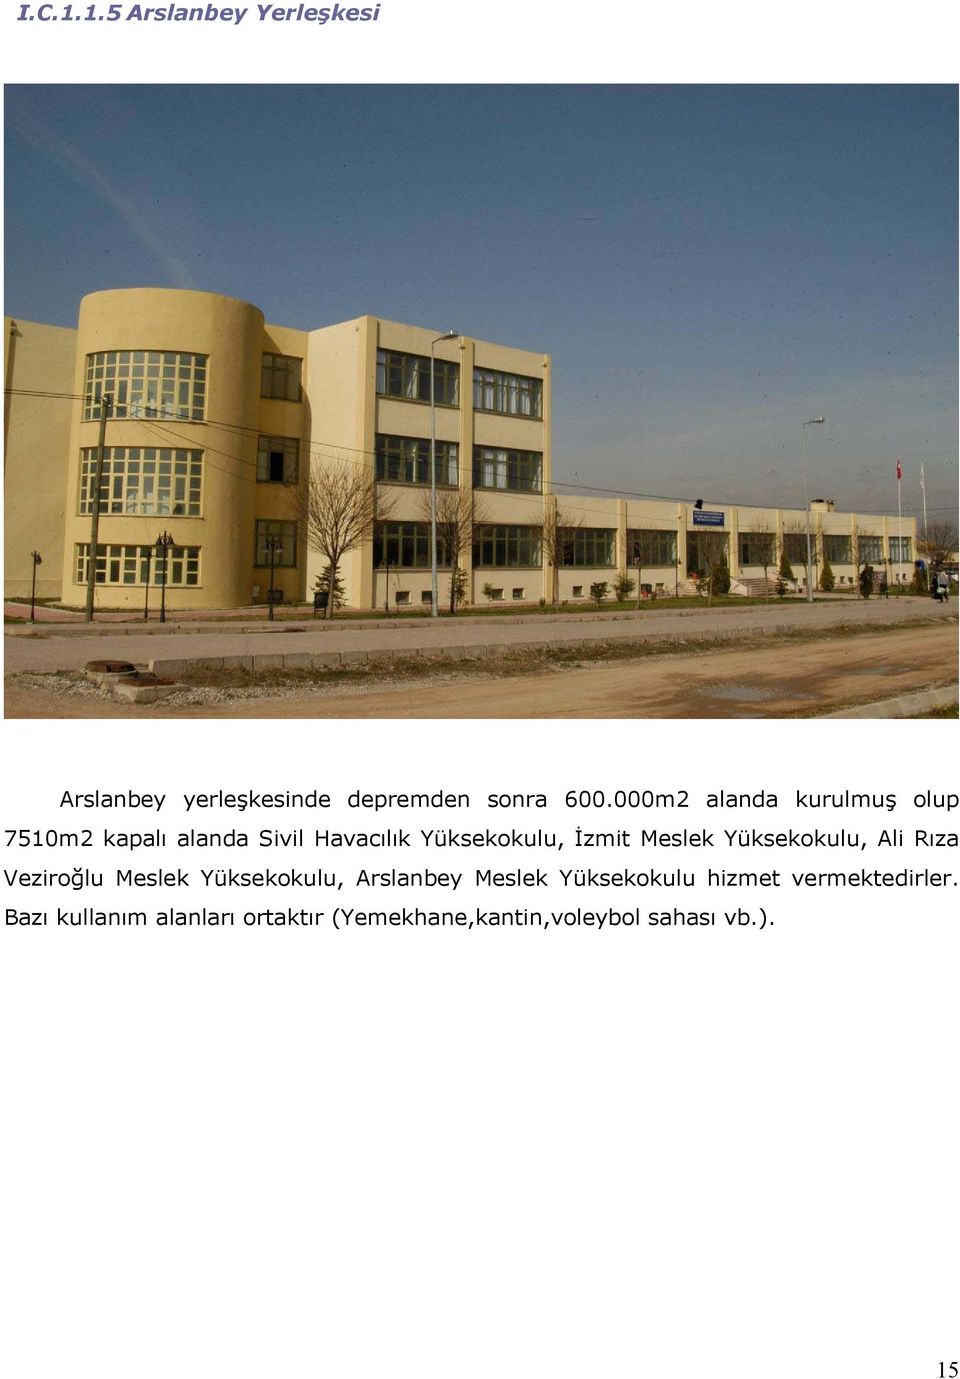 Meslek Yüksekokulu, Ali Rıza Veziroğlu Meslek Yüksekokulu, Arslanbey Meslek